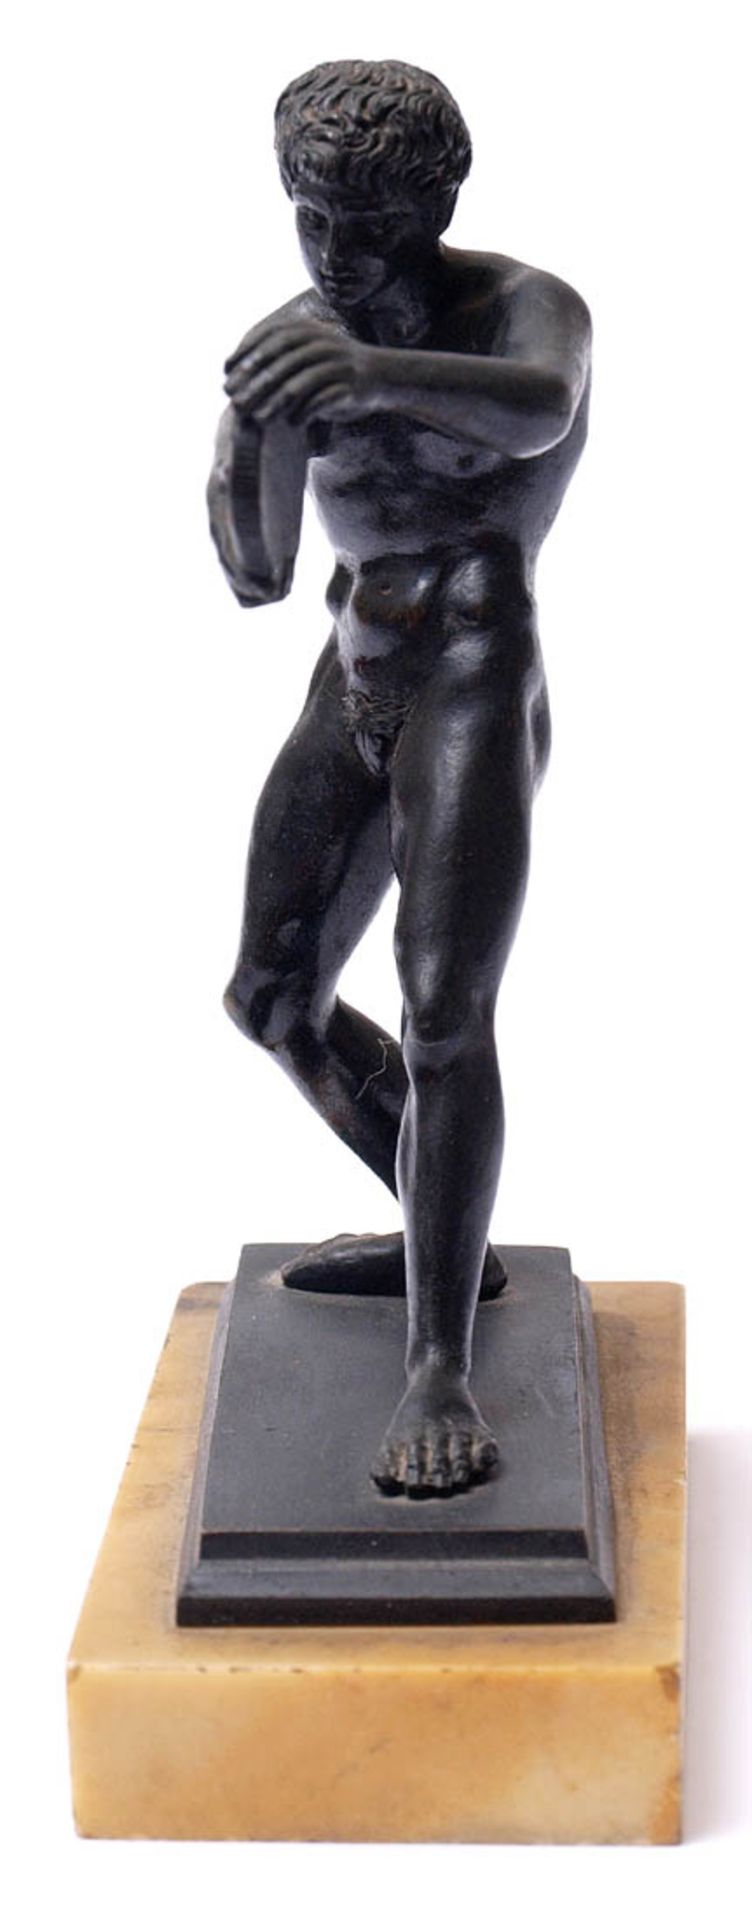 Museumsreplik, 19.Jhdt.Diskuswerfer nach römischem Vorbild. Bronze, schwarz patiniert, auf gelb- - Bild 2 aus 3